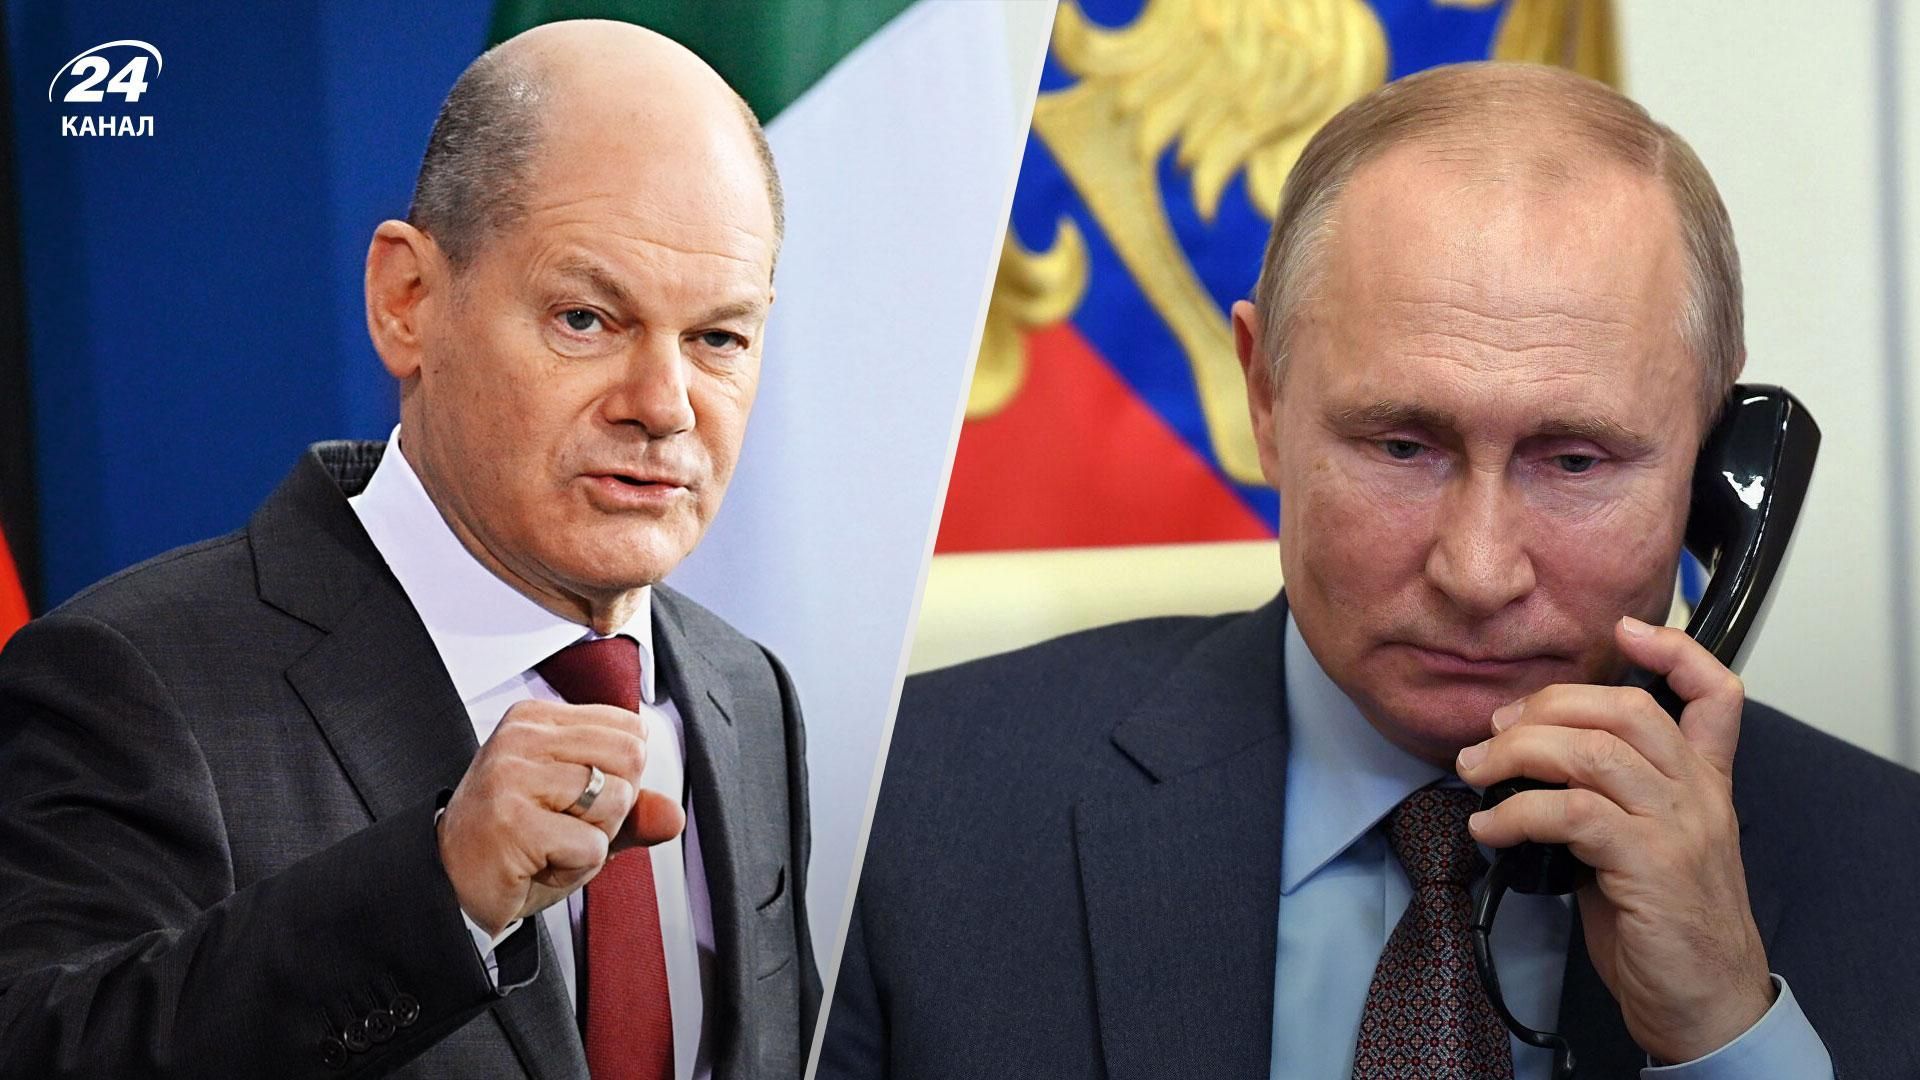 Переговоры между Украиной и Россией - Шольц заявил, что Путин сначала должен вывести войска - 24 Канал